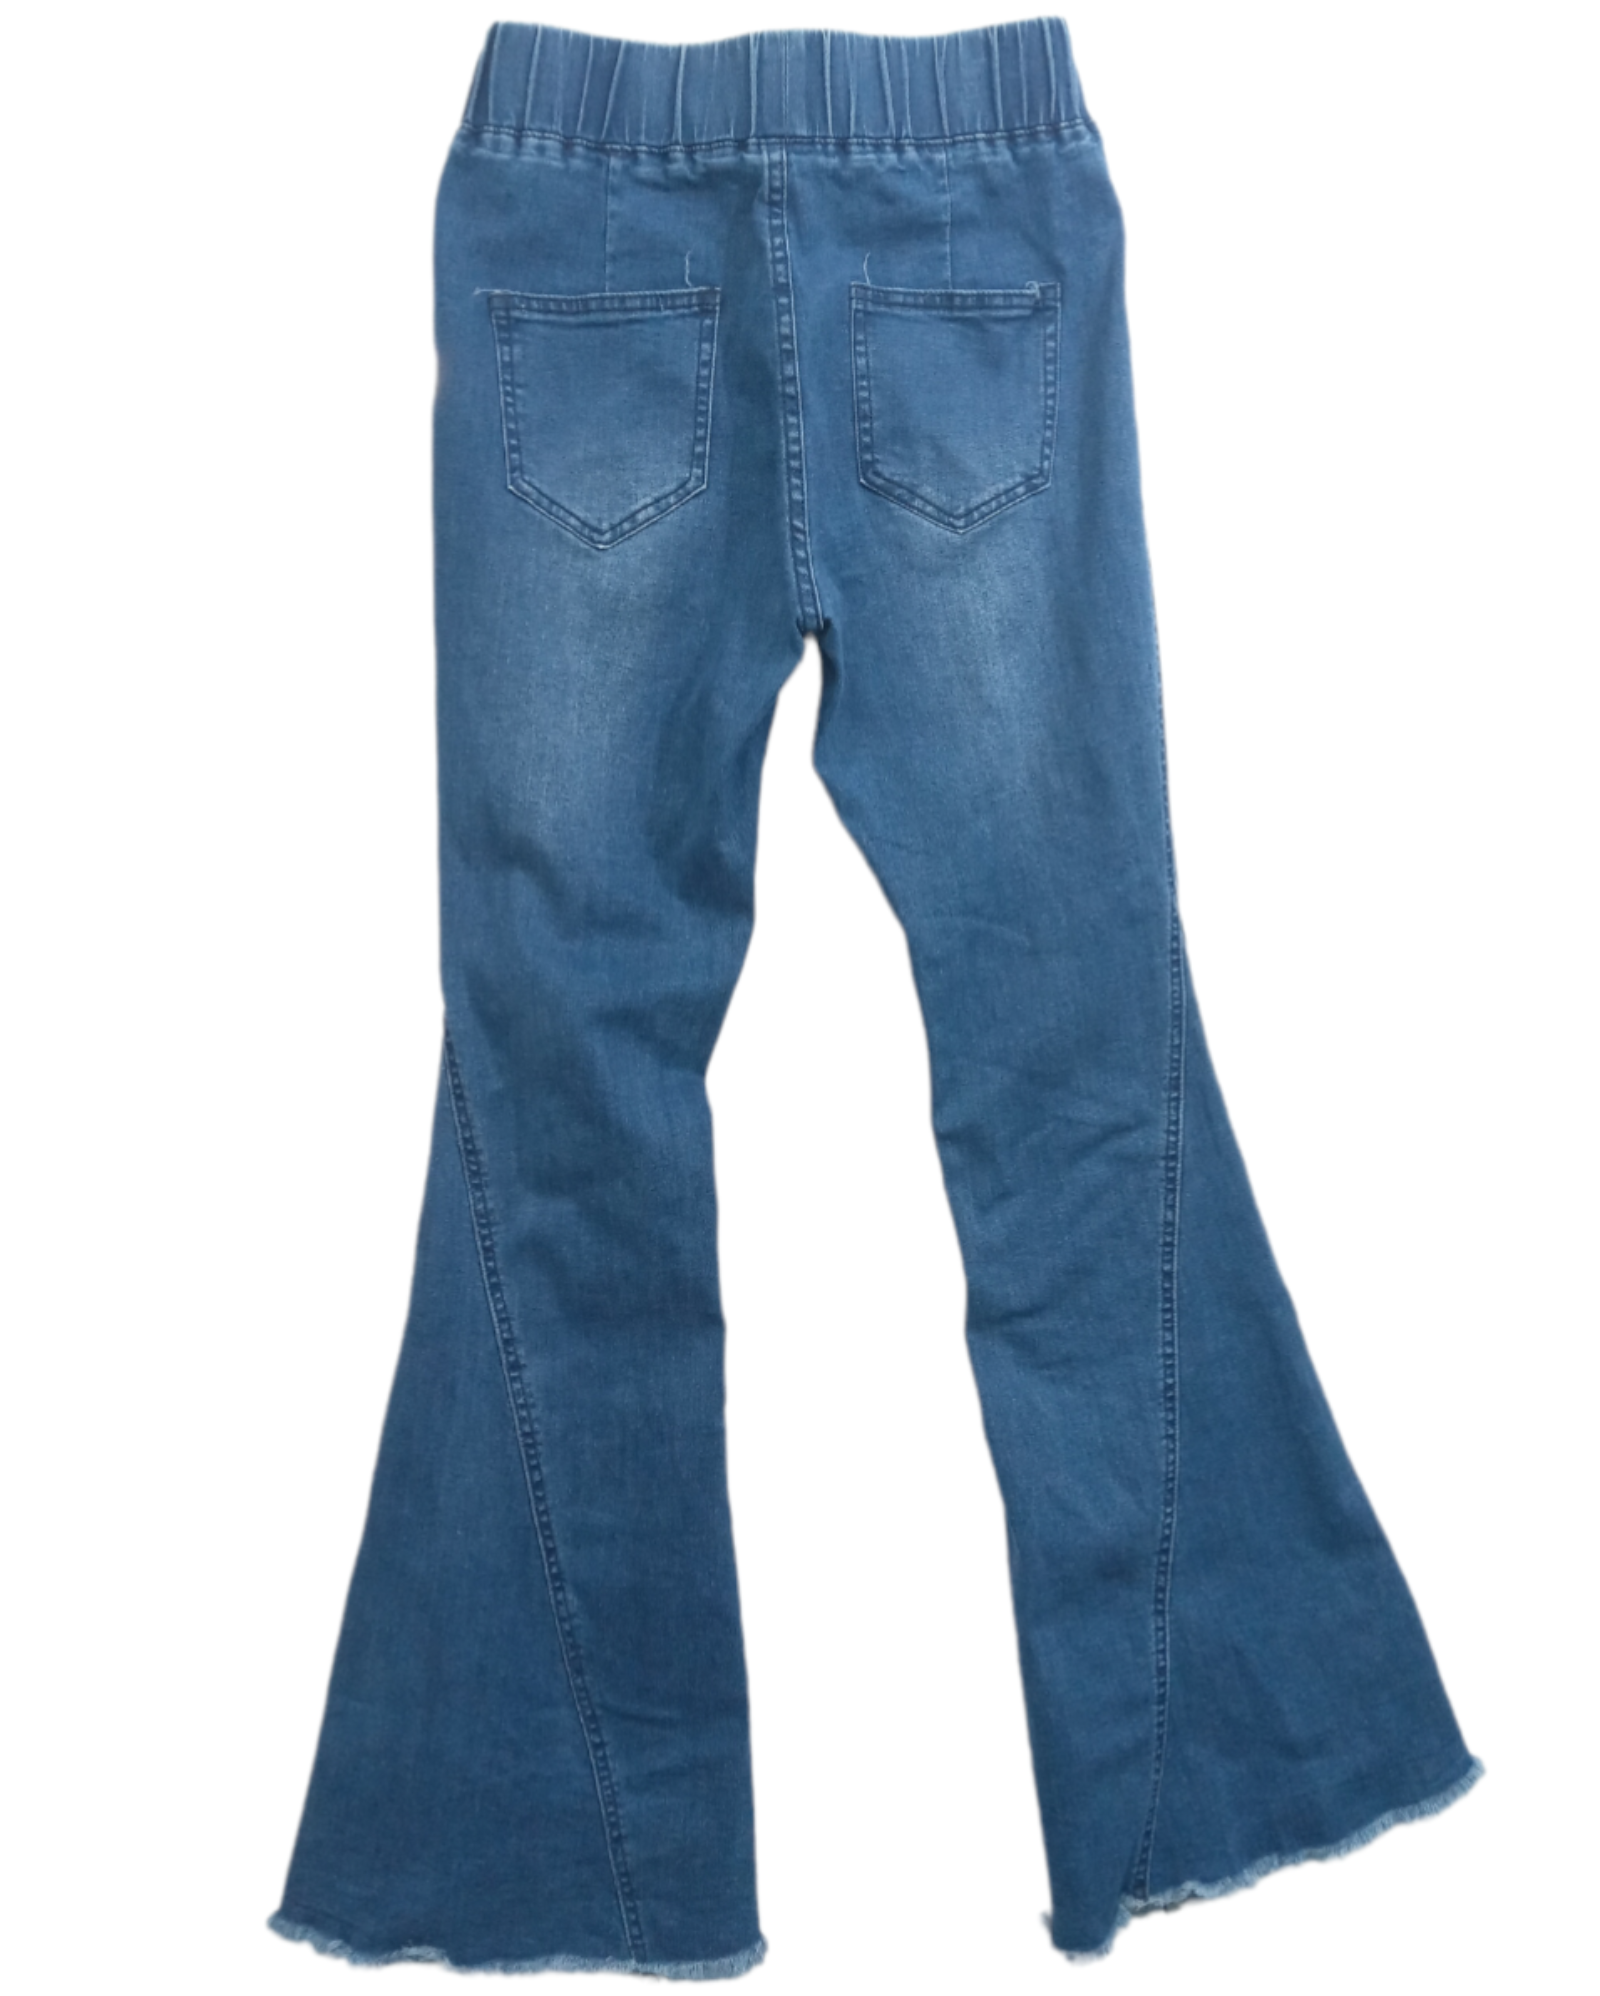 Jeans Acampanados 2